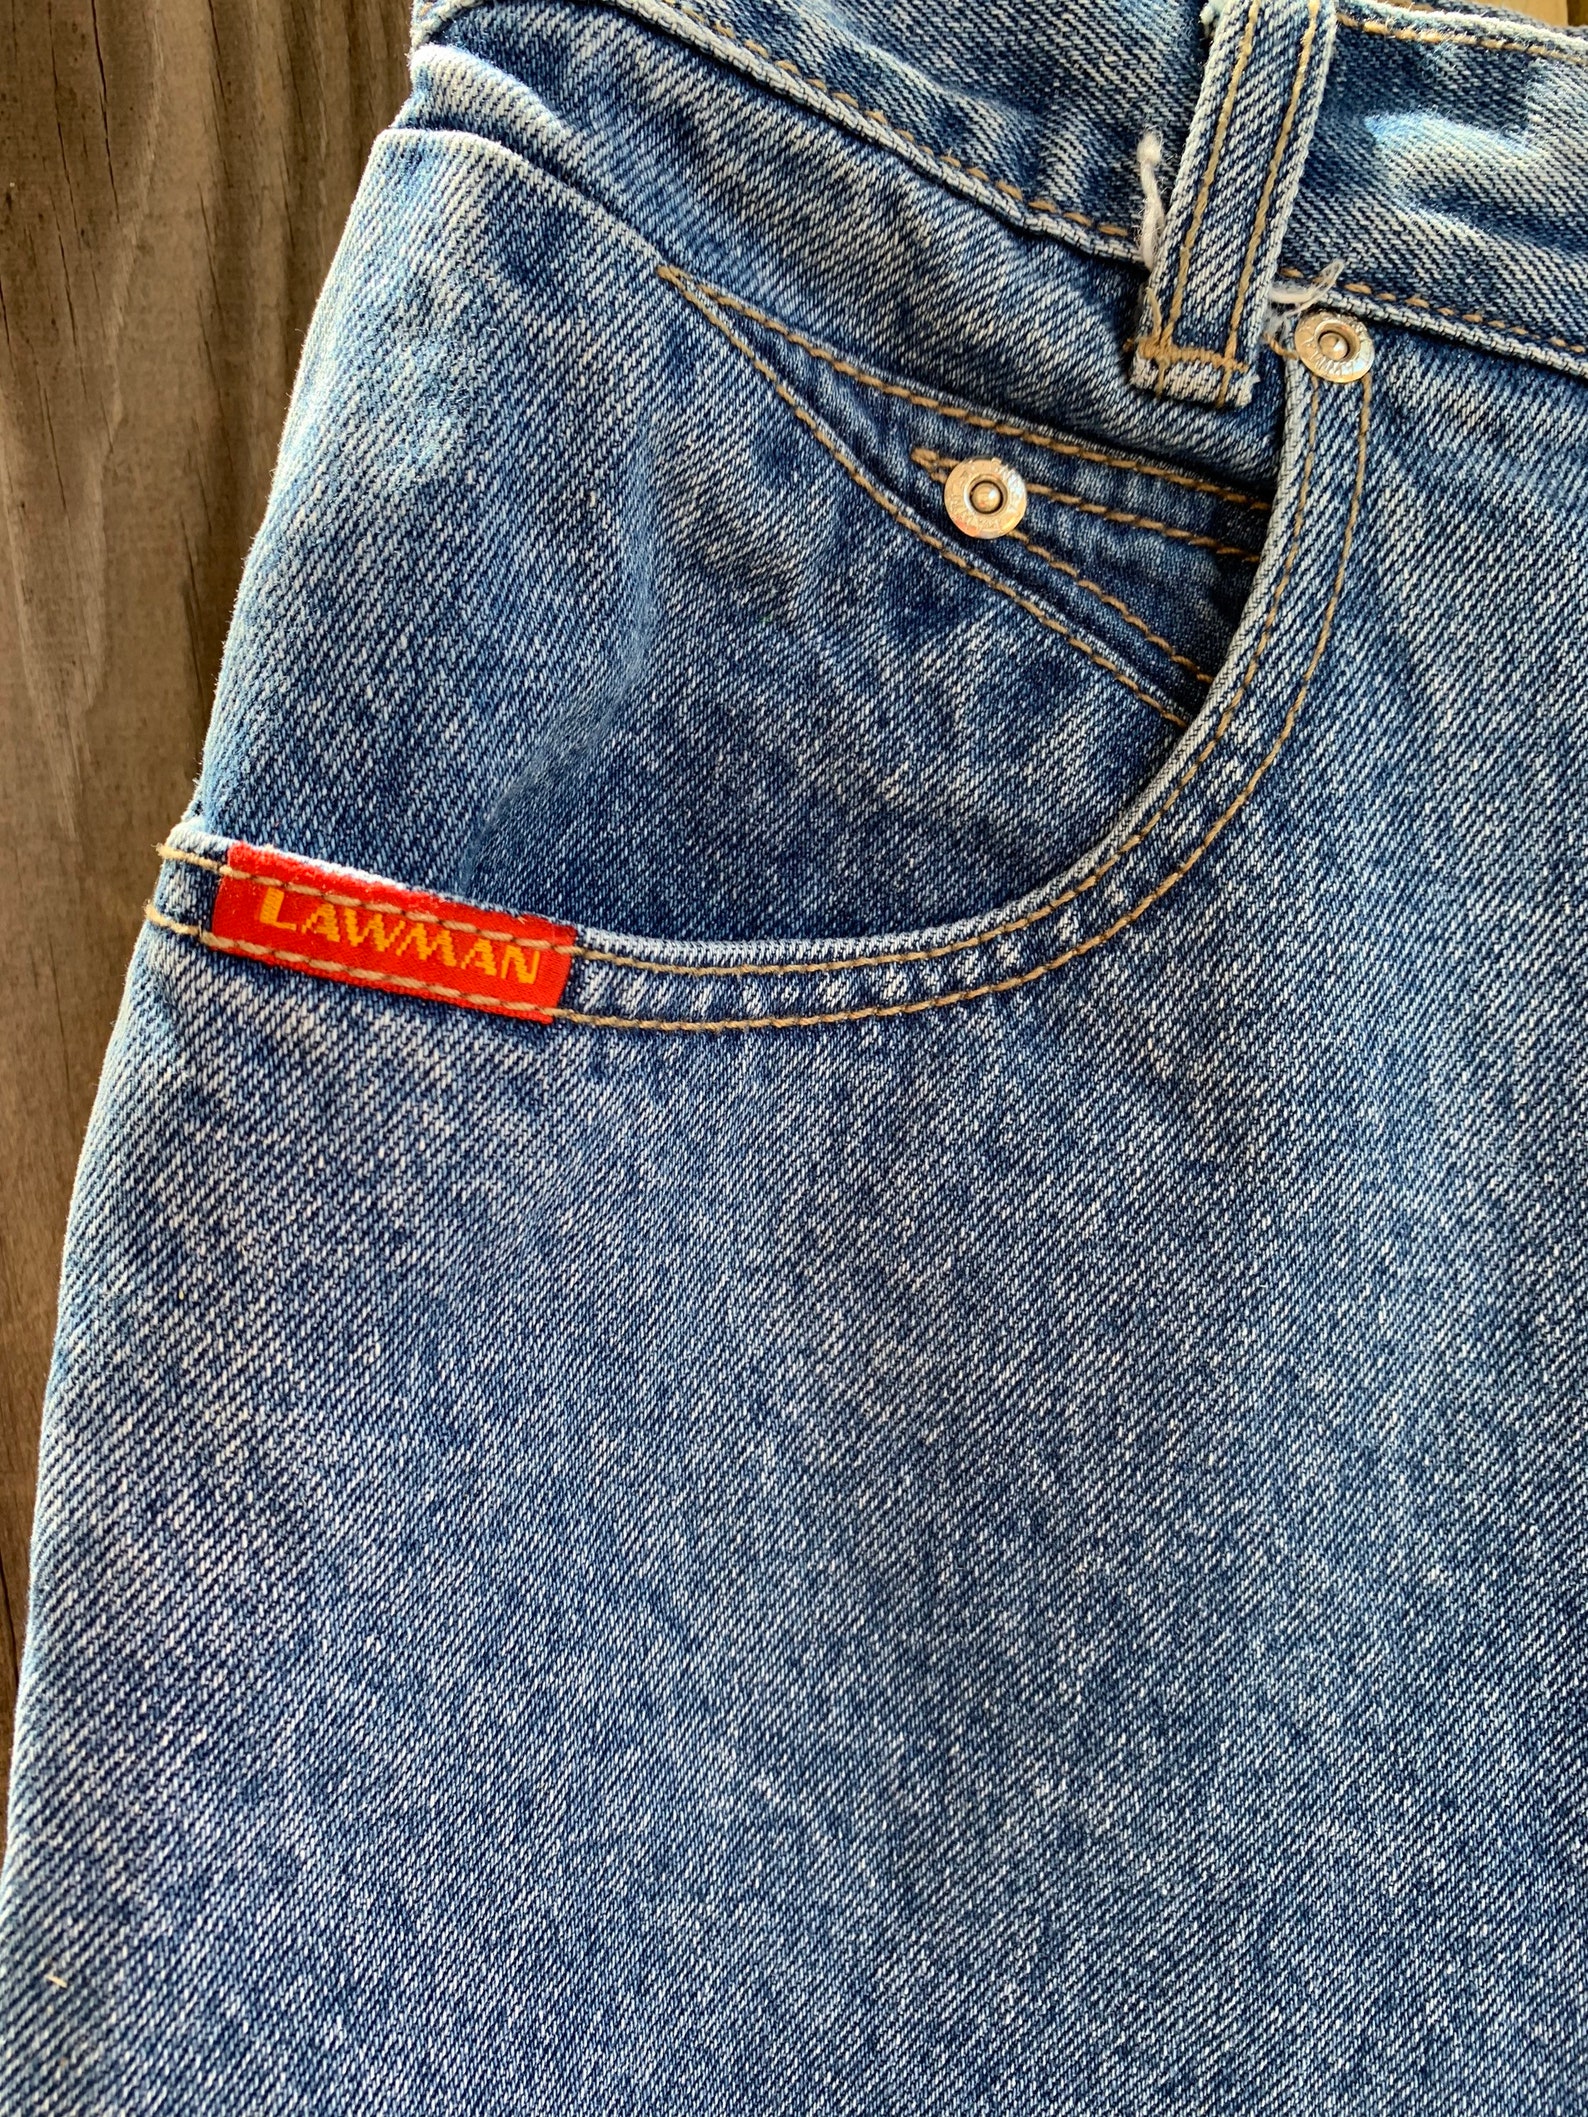 Vintage Lawman jeans size 7. | Etsy